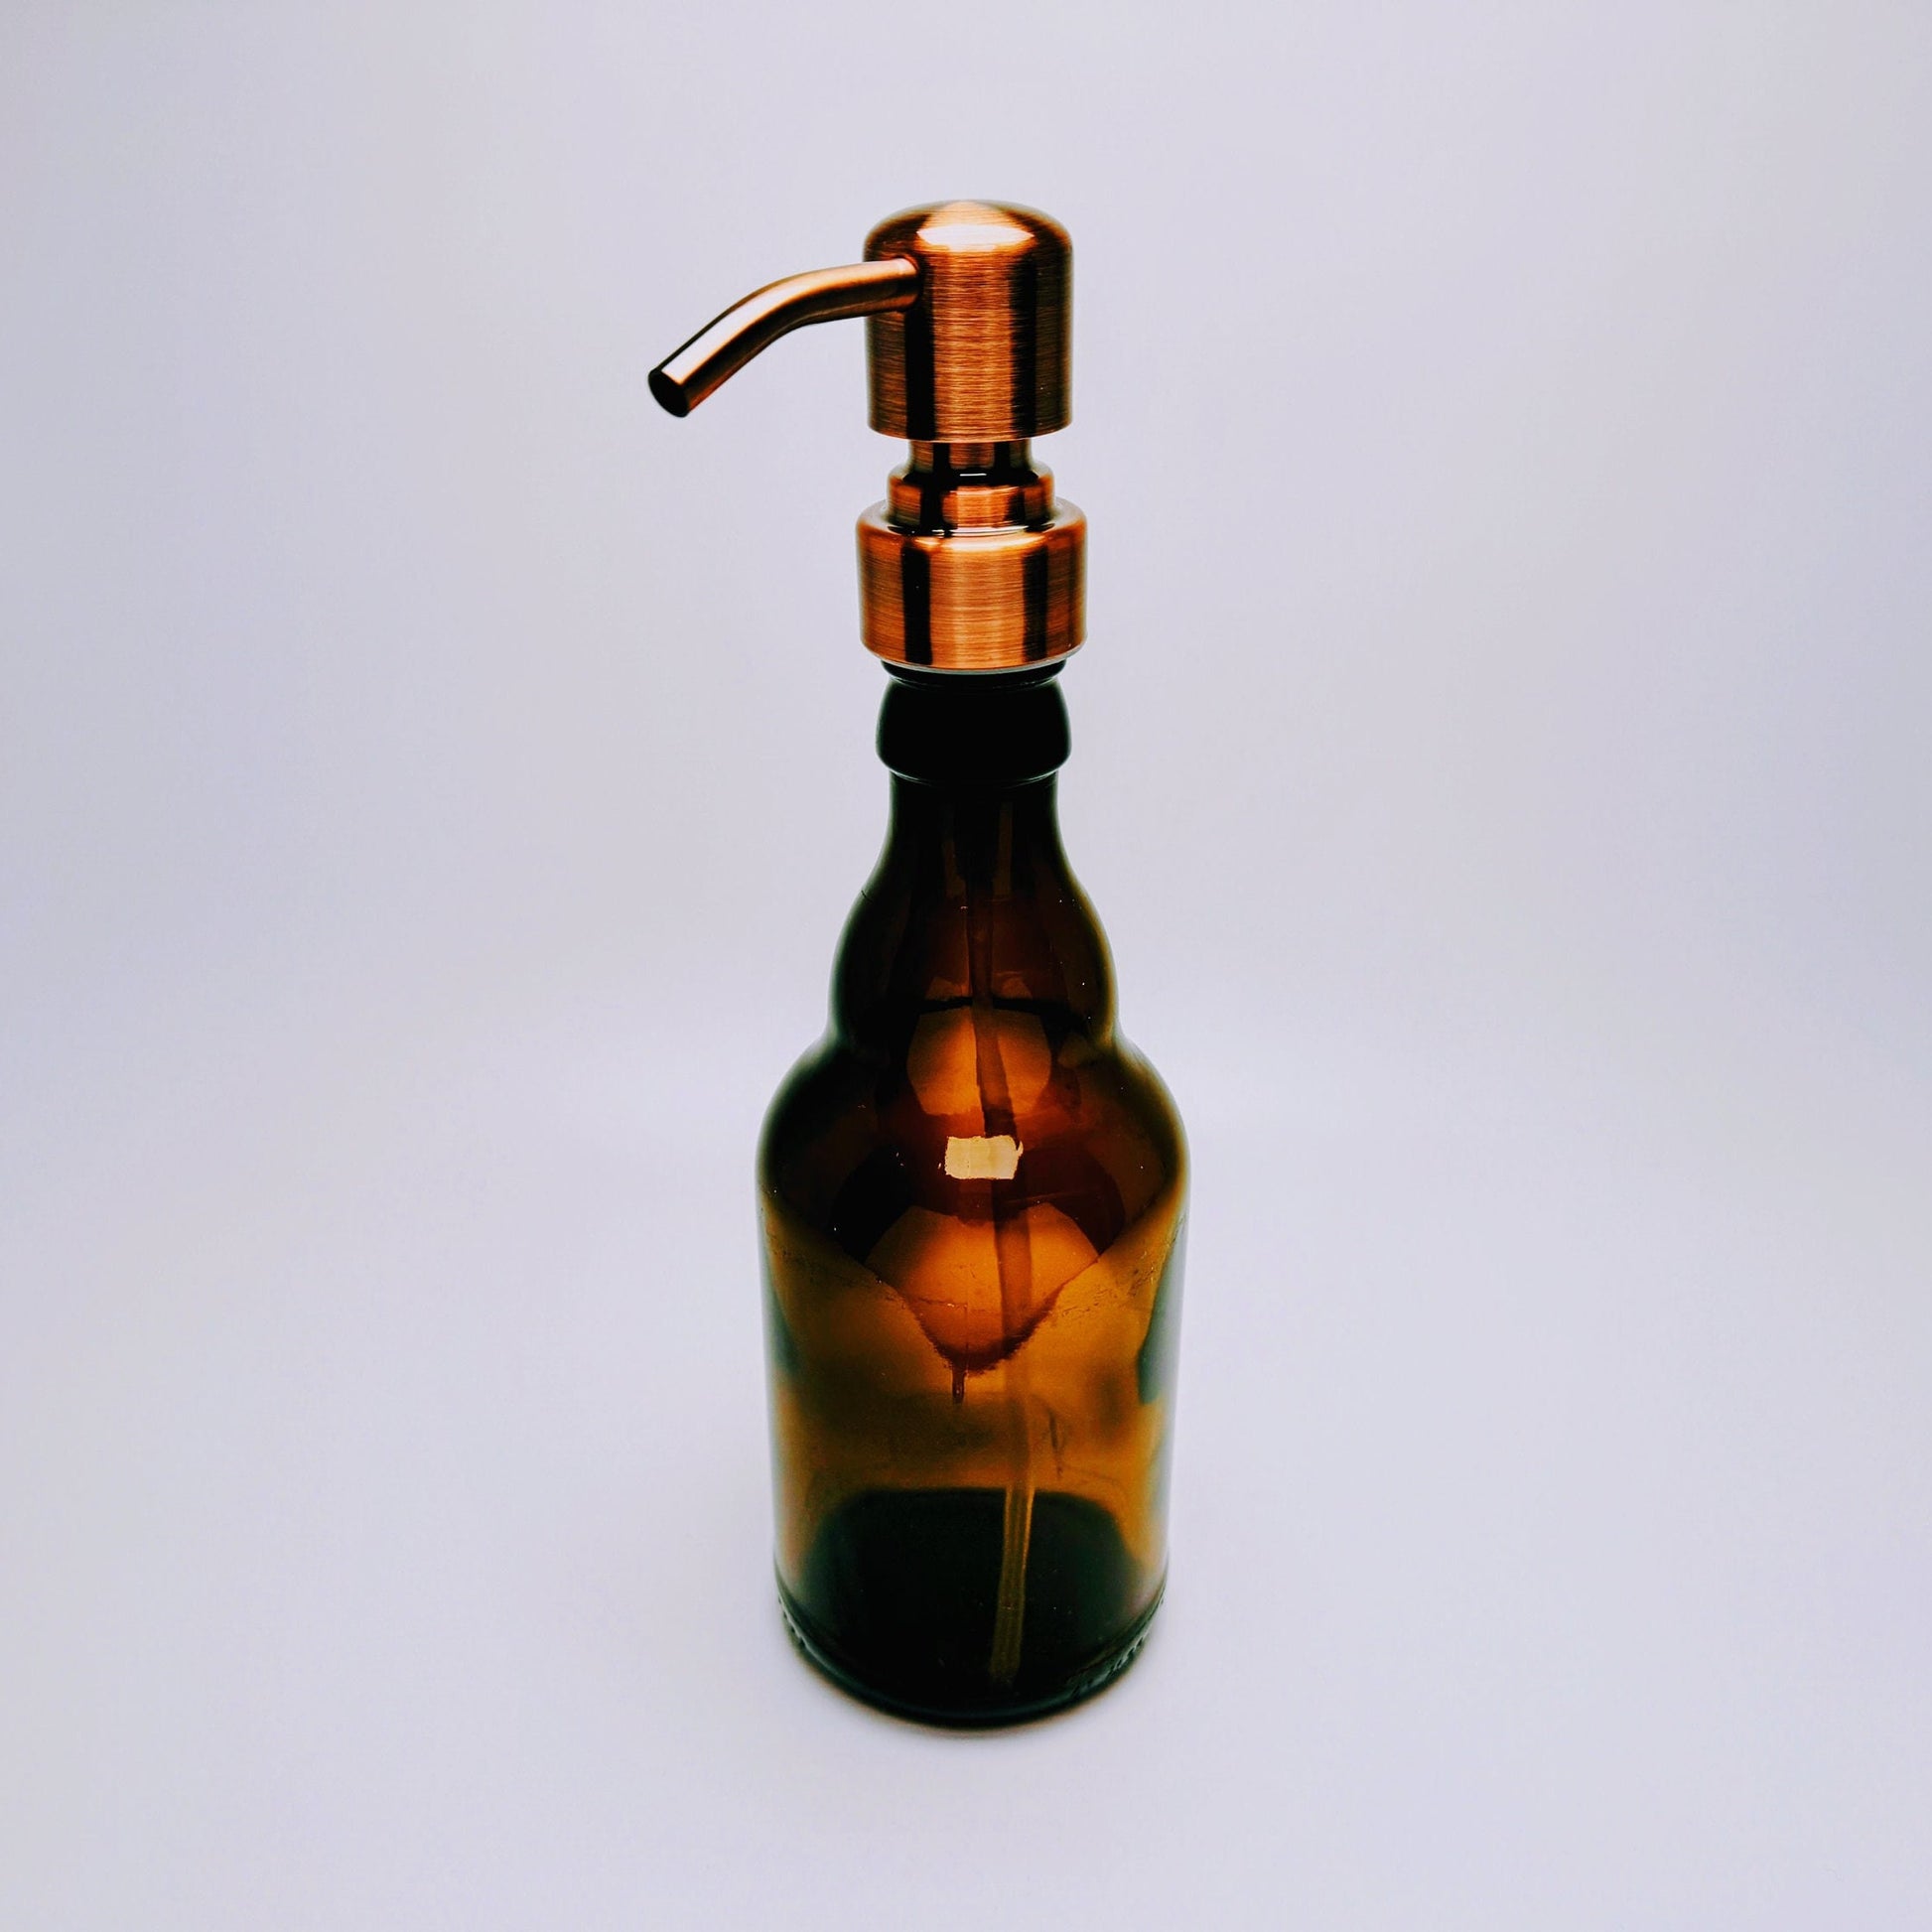 Seifenspender "Stubbi" | Handgemachte & nachfüllbare Seifenspender aus Steini / Stubbi Bier Flaschen | Upcycling Geschenk für Bier Fans